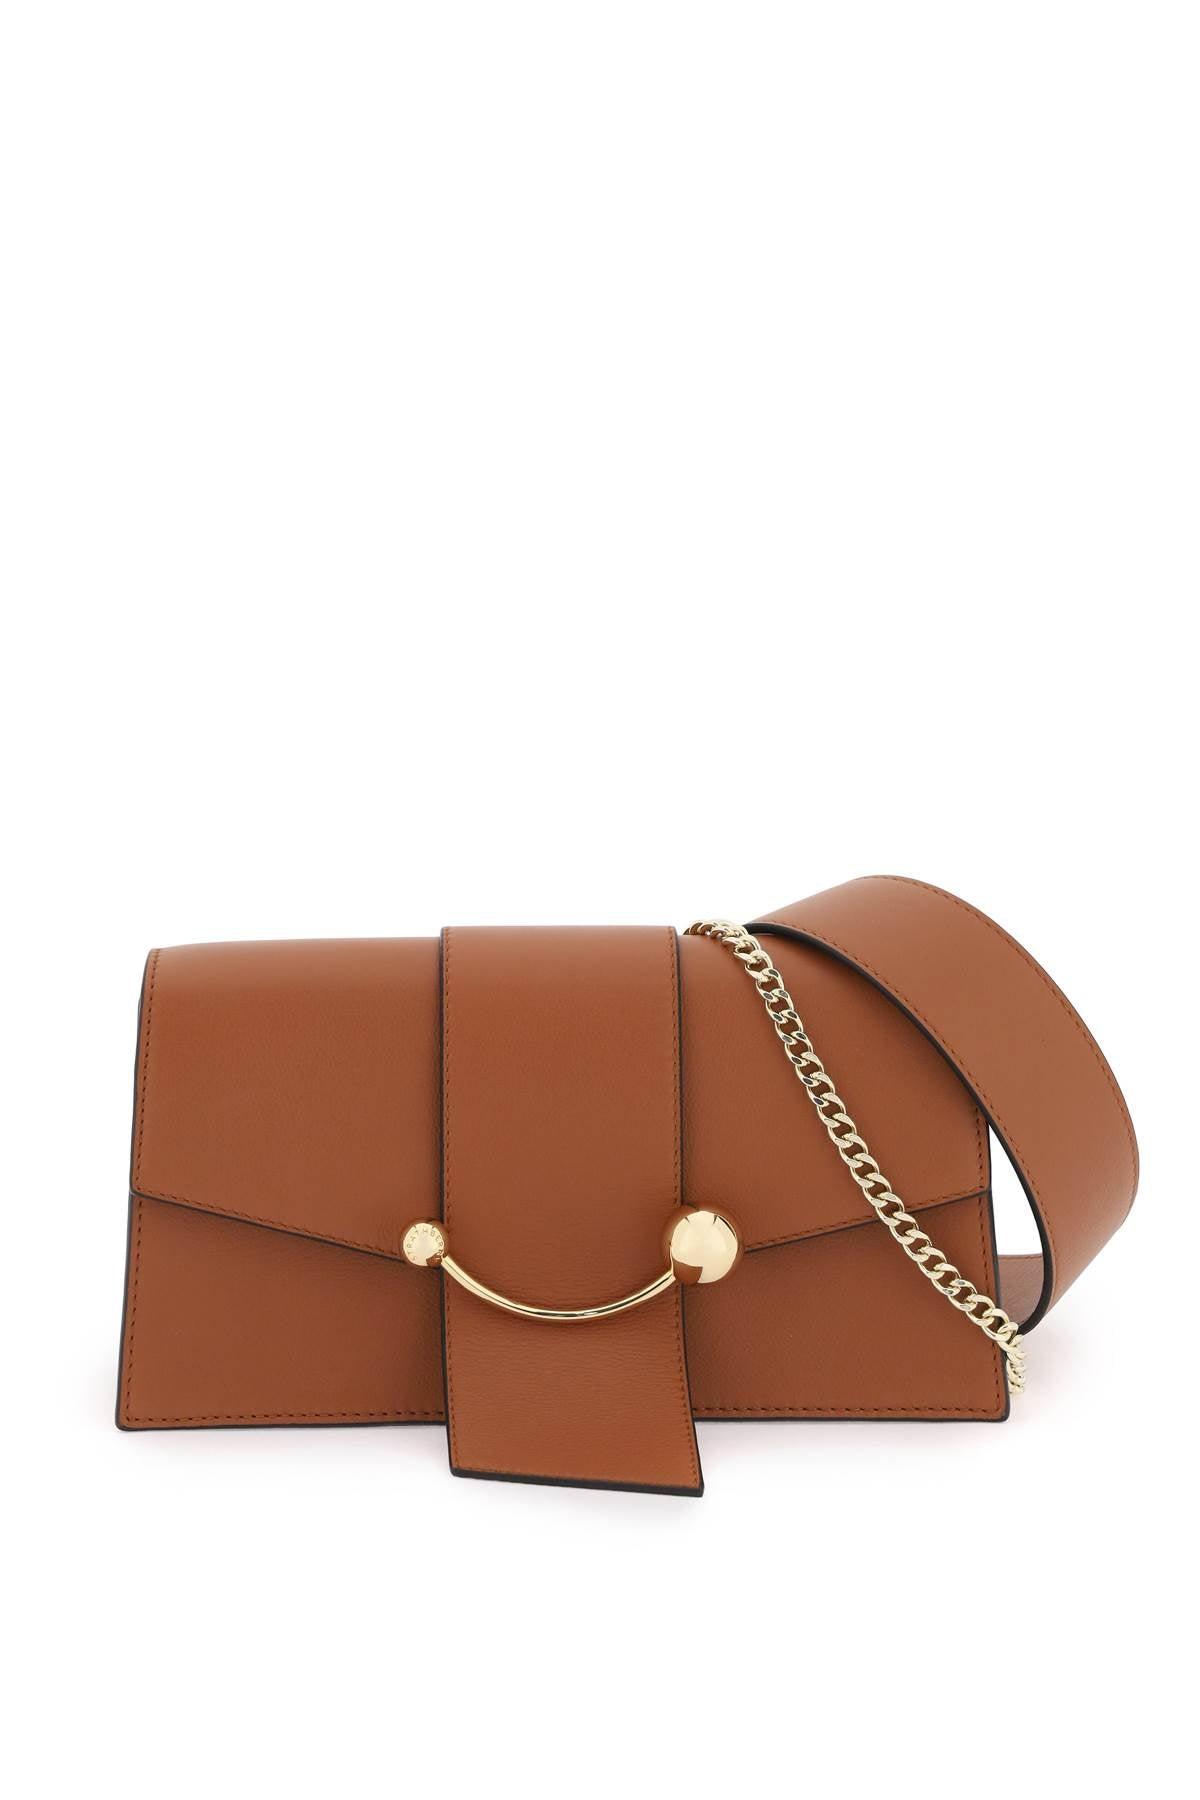 Strathberry - Crescent Shoulder - Leather Shoulder Bag - Beige